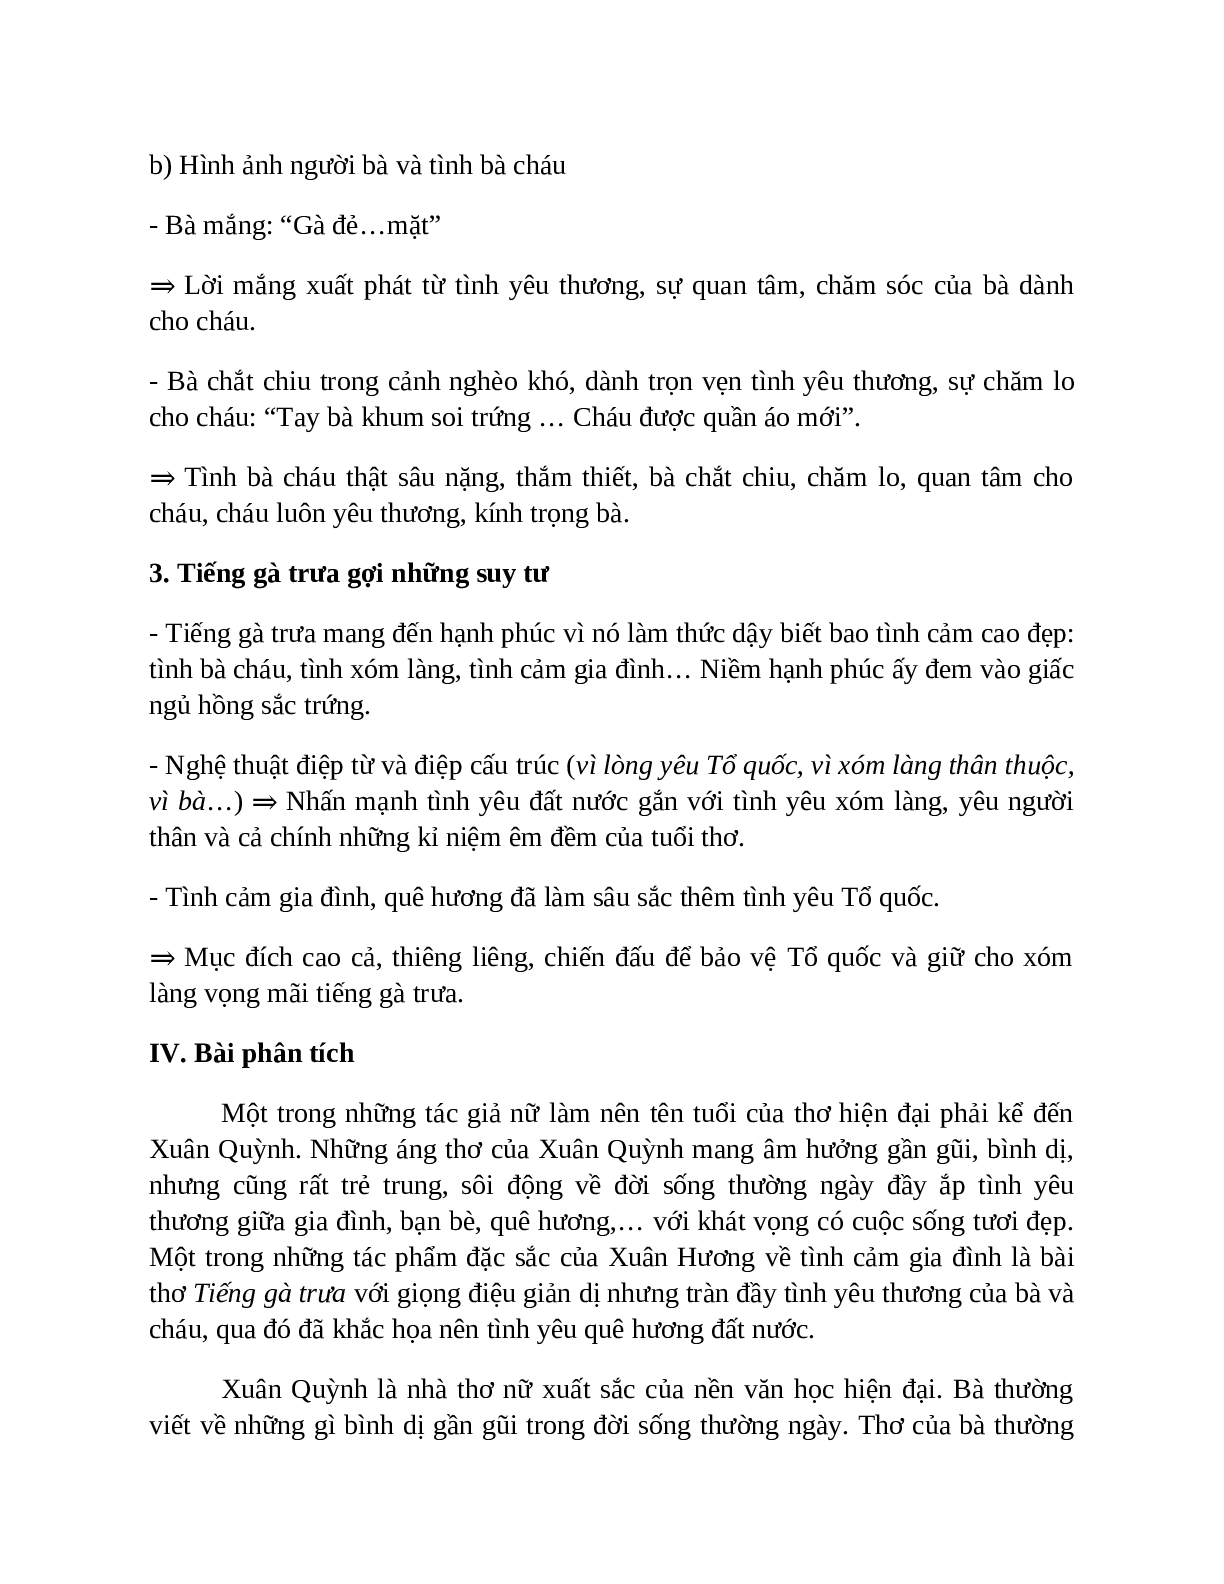 Sơ đồ tư duy bài Tiếng gà trưa dễ nhớ, ngắn nhất - Ngữ văn lớp 7 (trang 4)